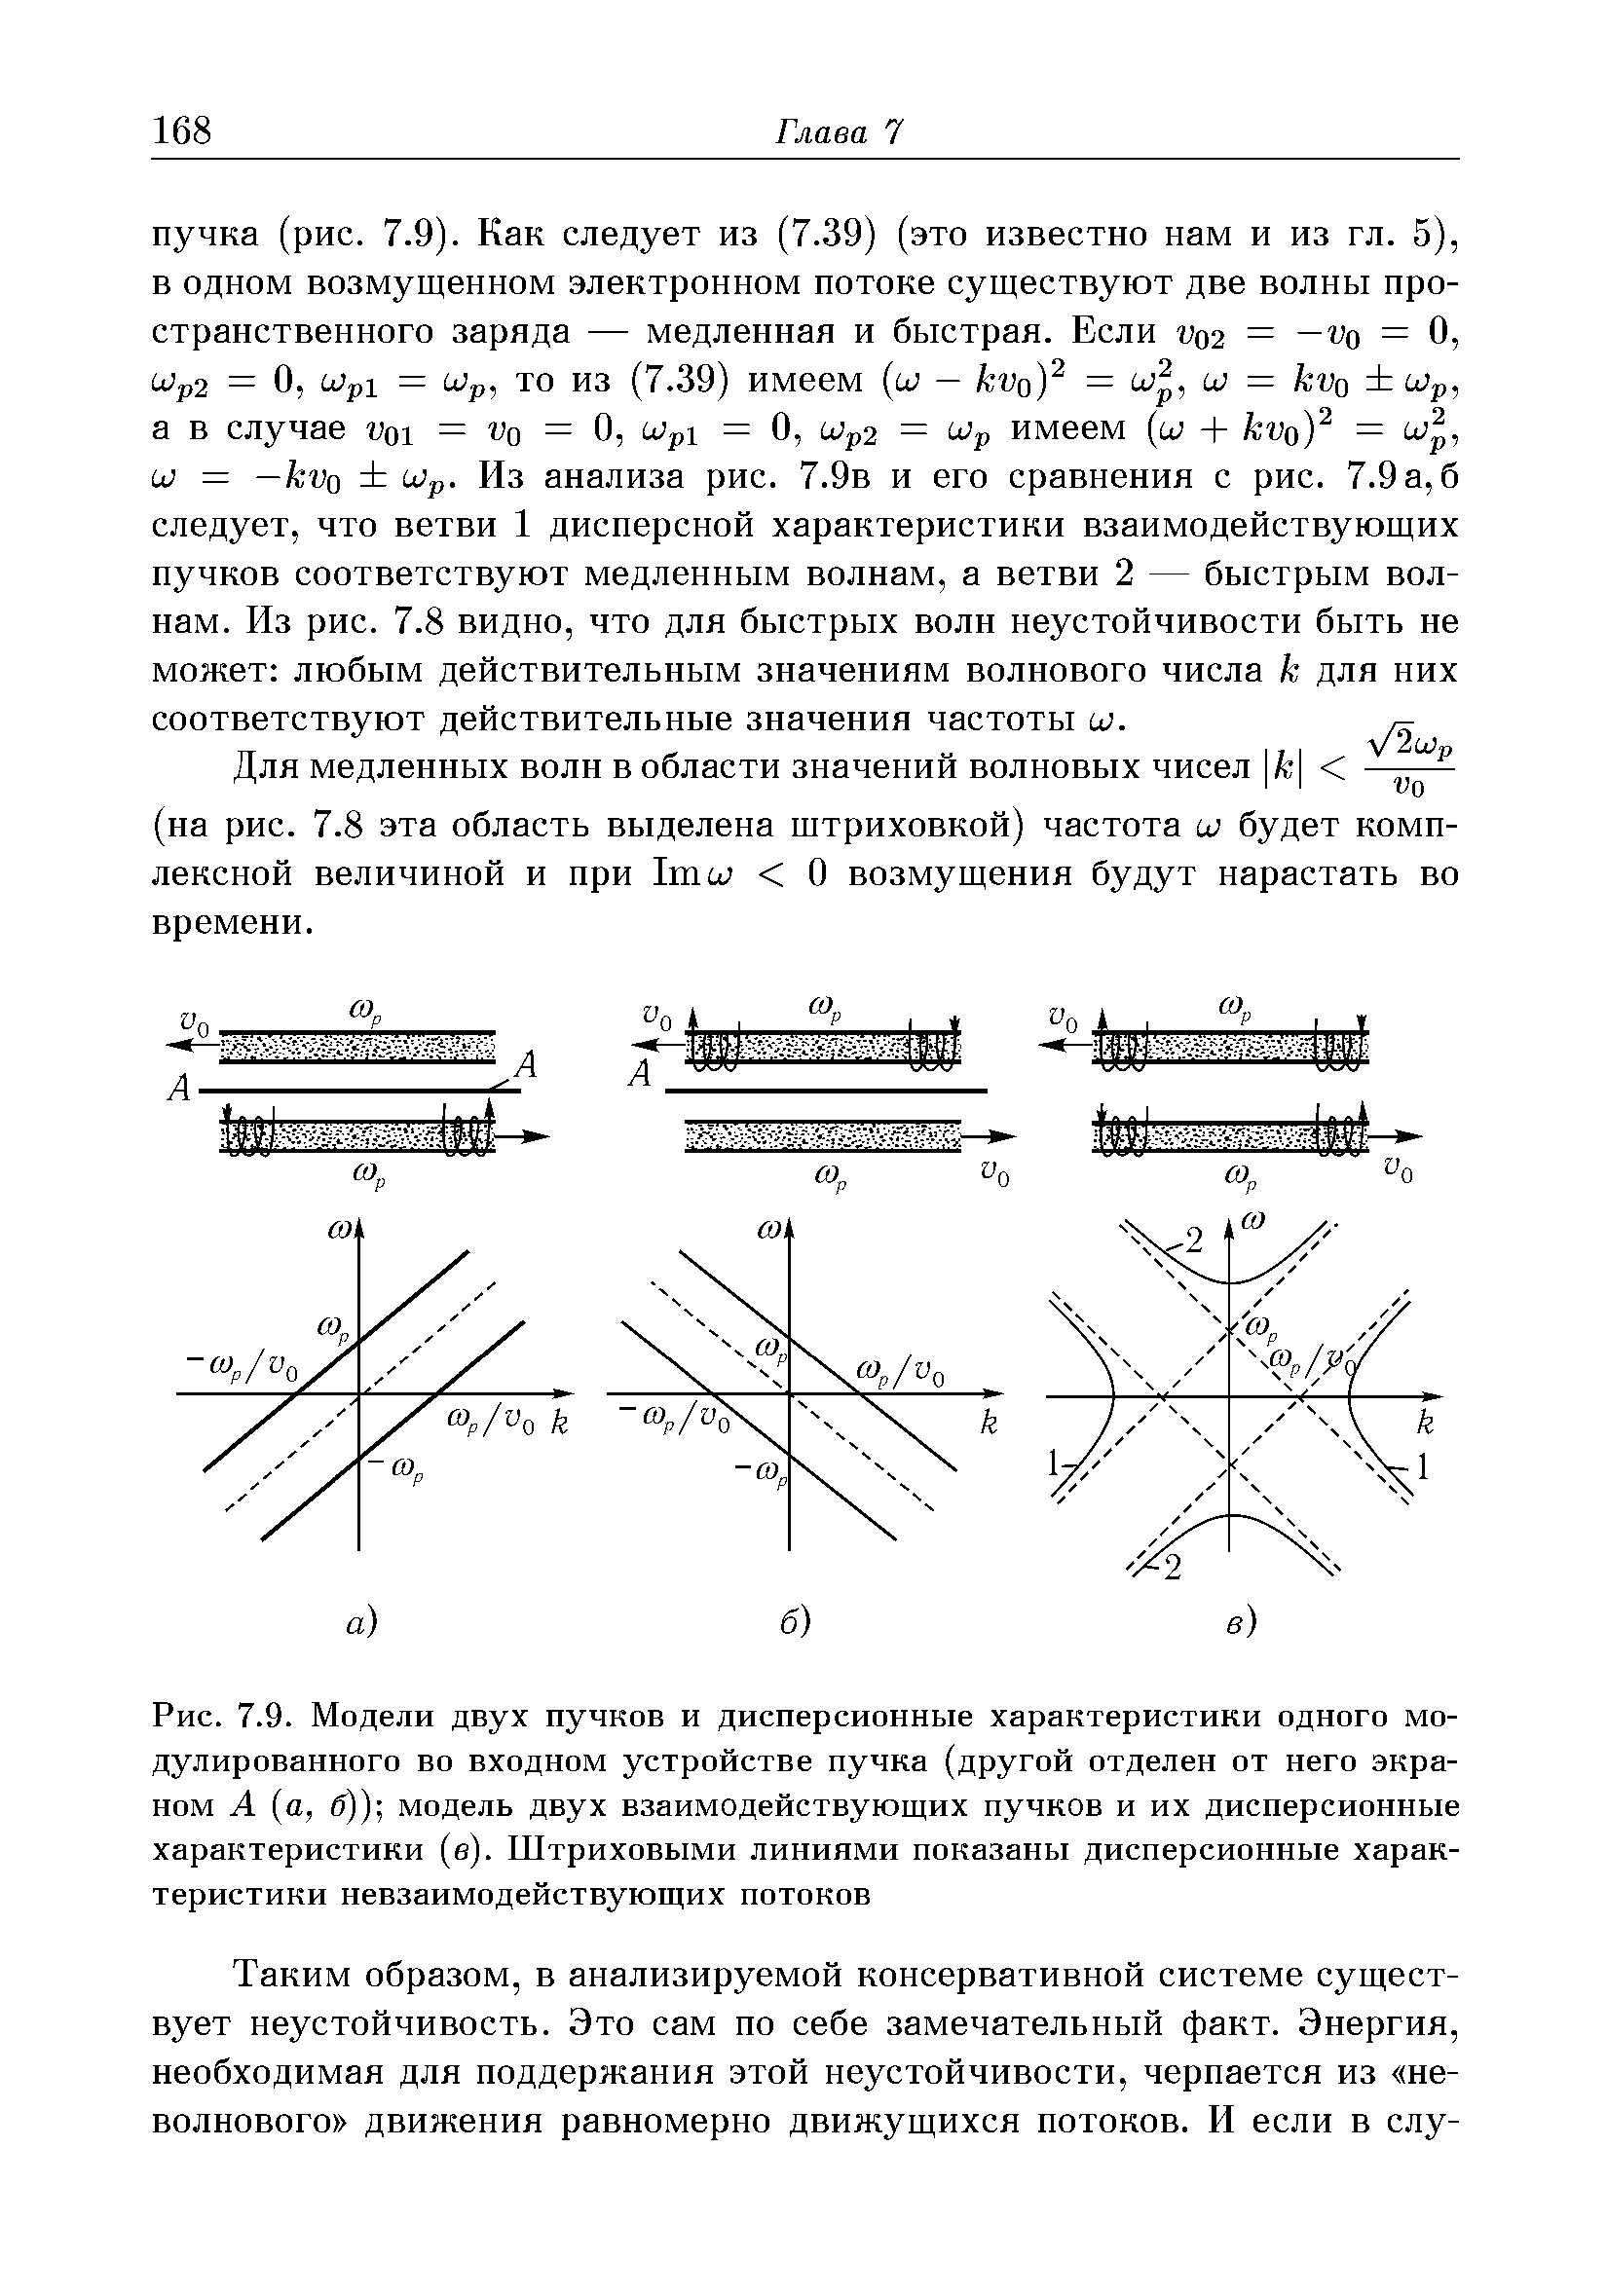 Рис. 7.9. Модели двух пучков и дисперсионные характеристики одного модулированного во входном устройстве пучка (другой отделен от него экраном А а, б)) модель двух взаимодействующих пучков и их дисперсионные характеристики (е). Штриховыми линиями показаны дисперсионные характеристики невзаимодействующих потоков
